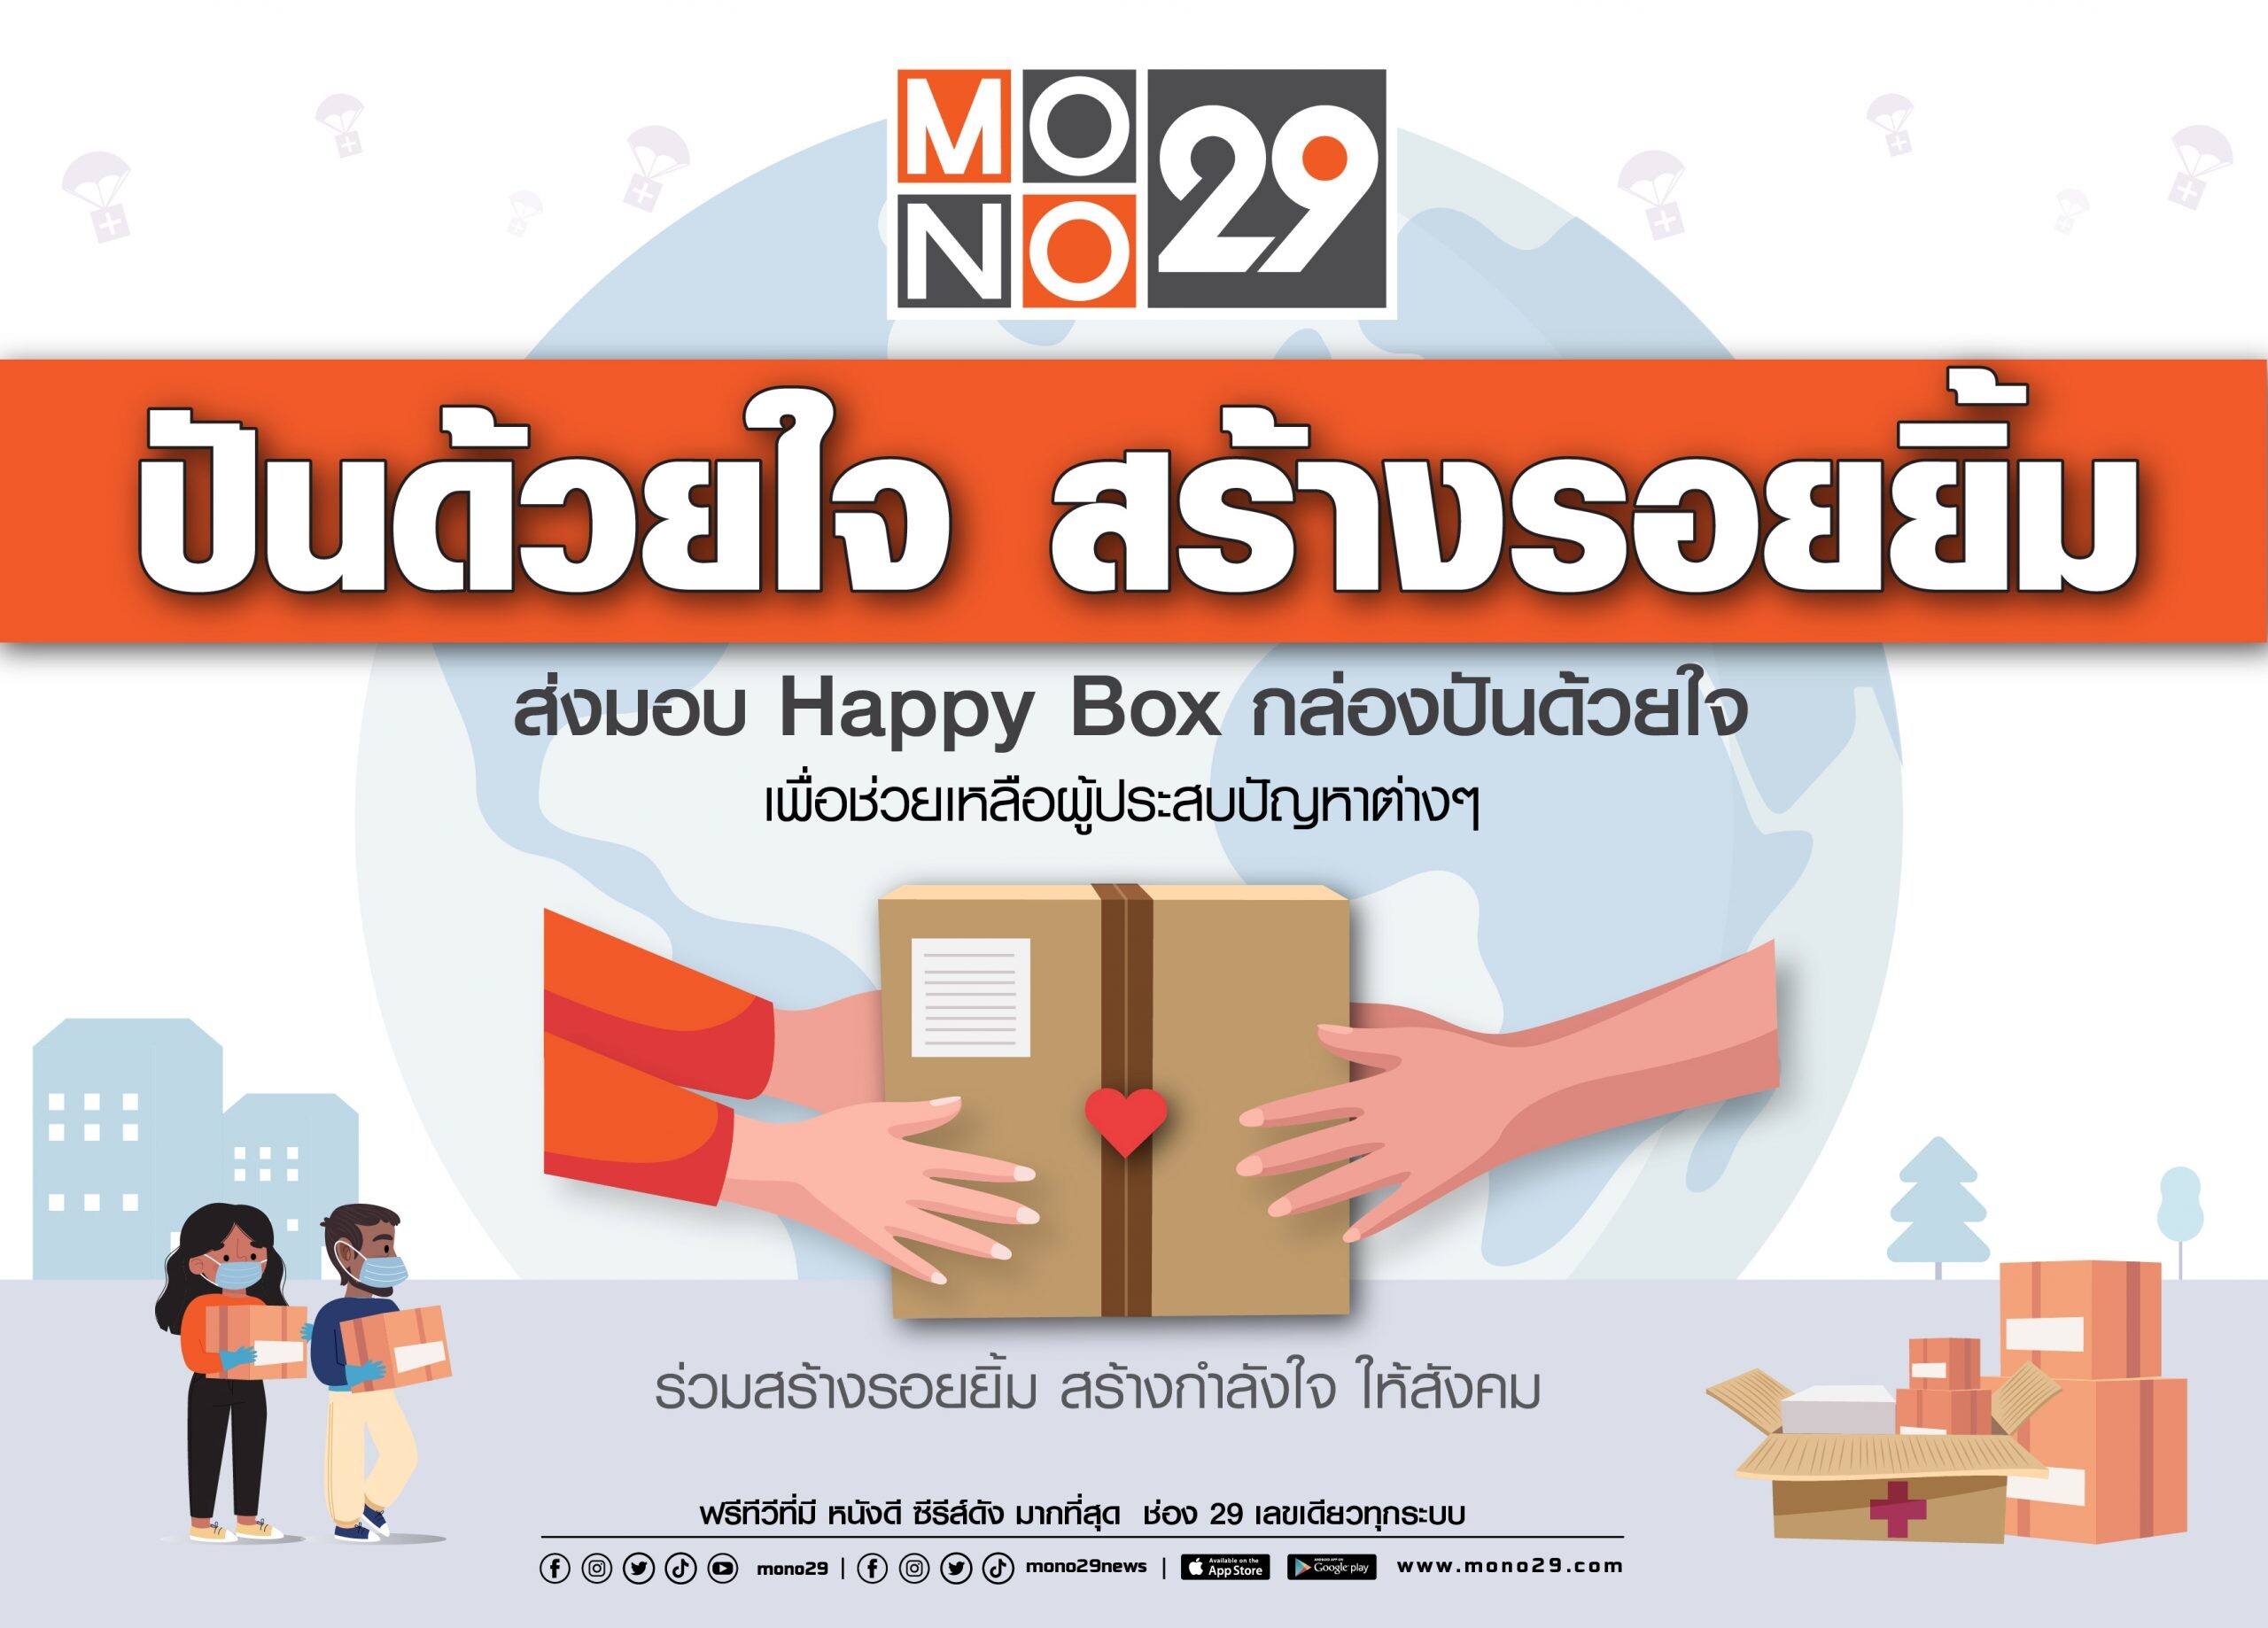 ช่อง "MONO29" ขอร่วมส่งต่อกำลังใจให้ผู้ชม ผ่านโครงการ "โมโน 29 ปันด้วยใจ สร้างรอยยิ้ม"